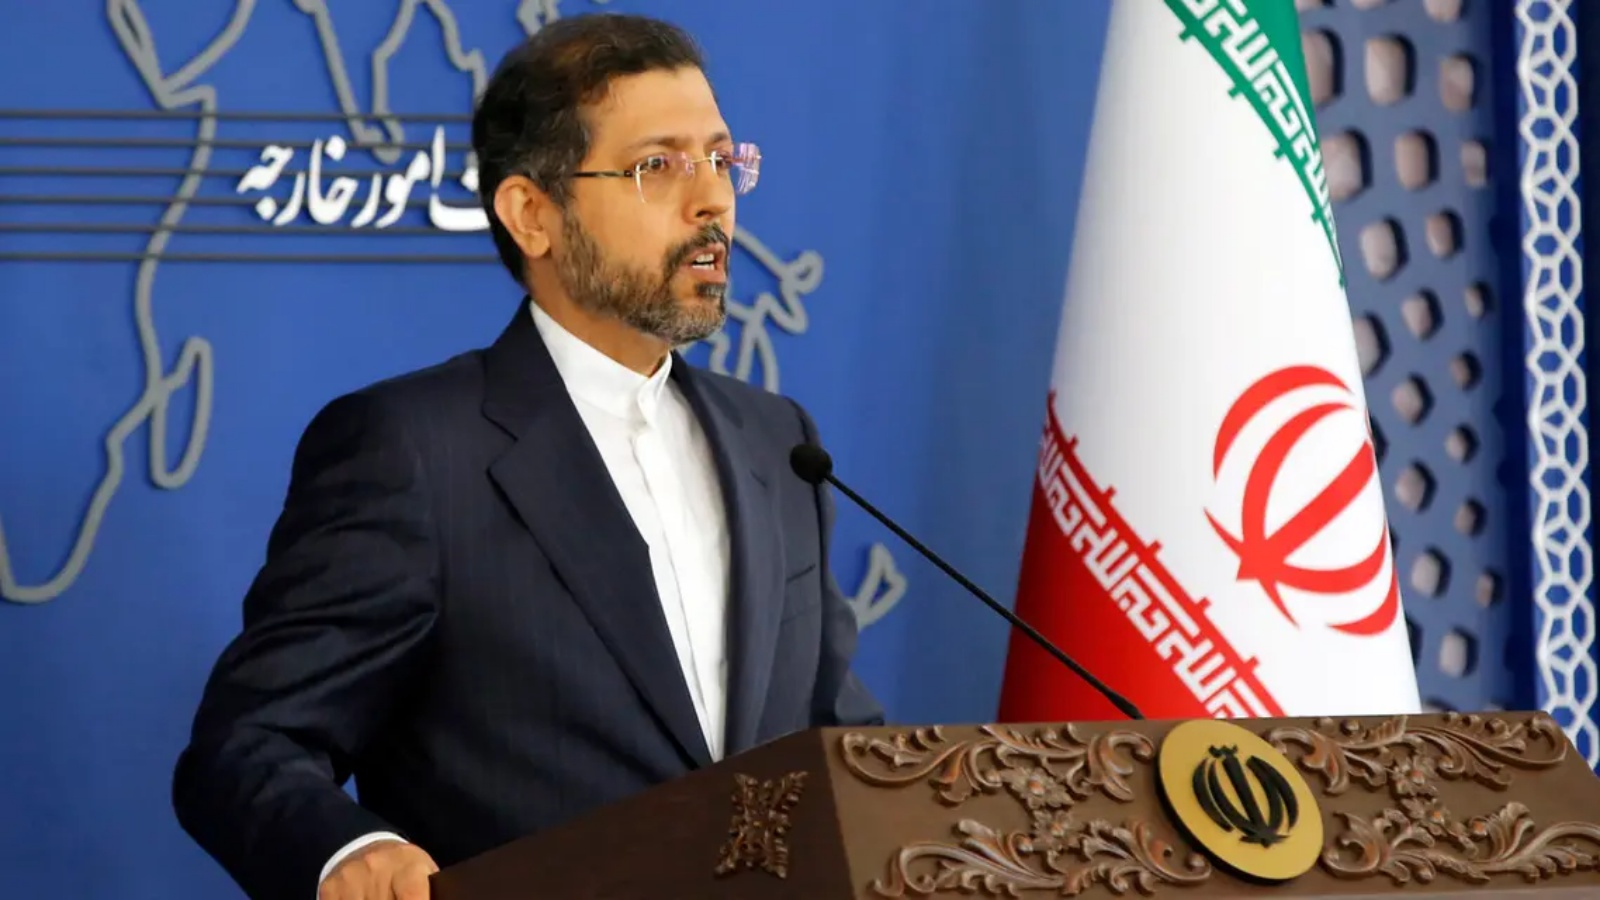 المتحدث باسم وزارة الخارجية الإيرانية سعيد خطيب زاده يتحدث إلى وسائل الإعلام خلال مؤتمر صحفي في طهران في 15 نوفمبر 2021.